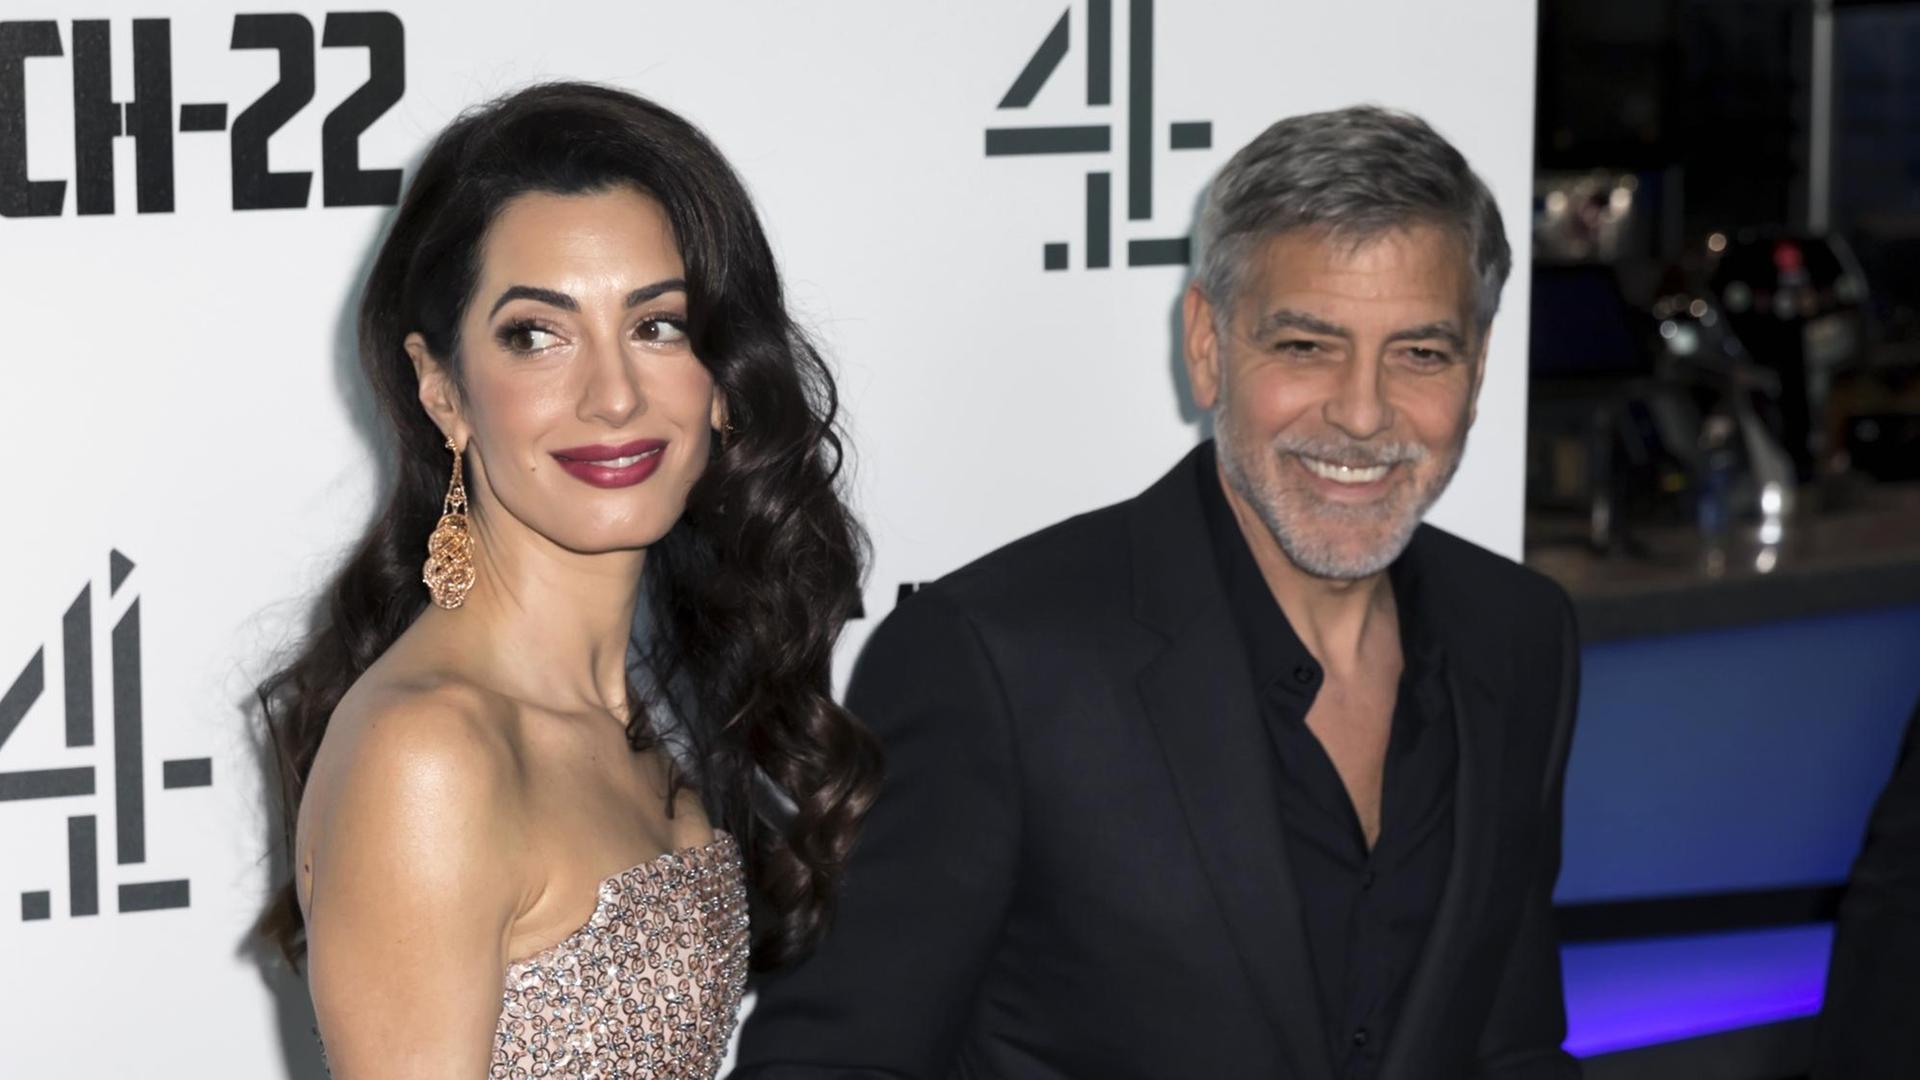 Amal und George Clooney auf dem roten Teppich bei einer TV-Premiere